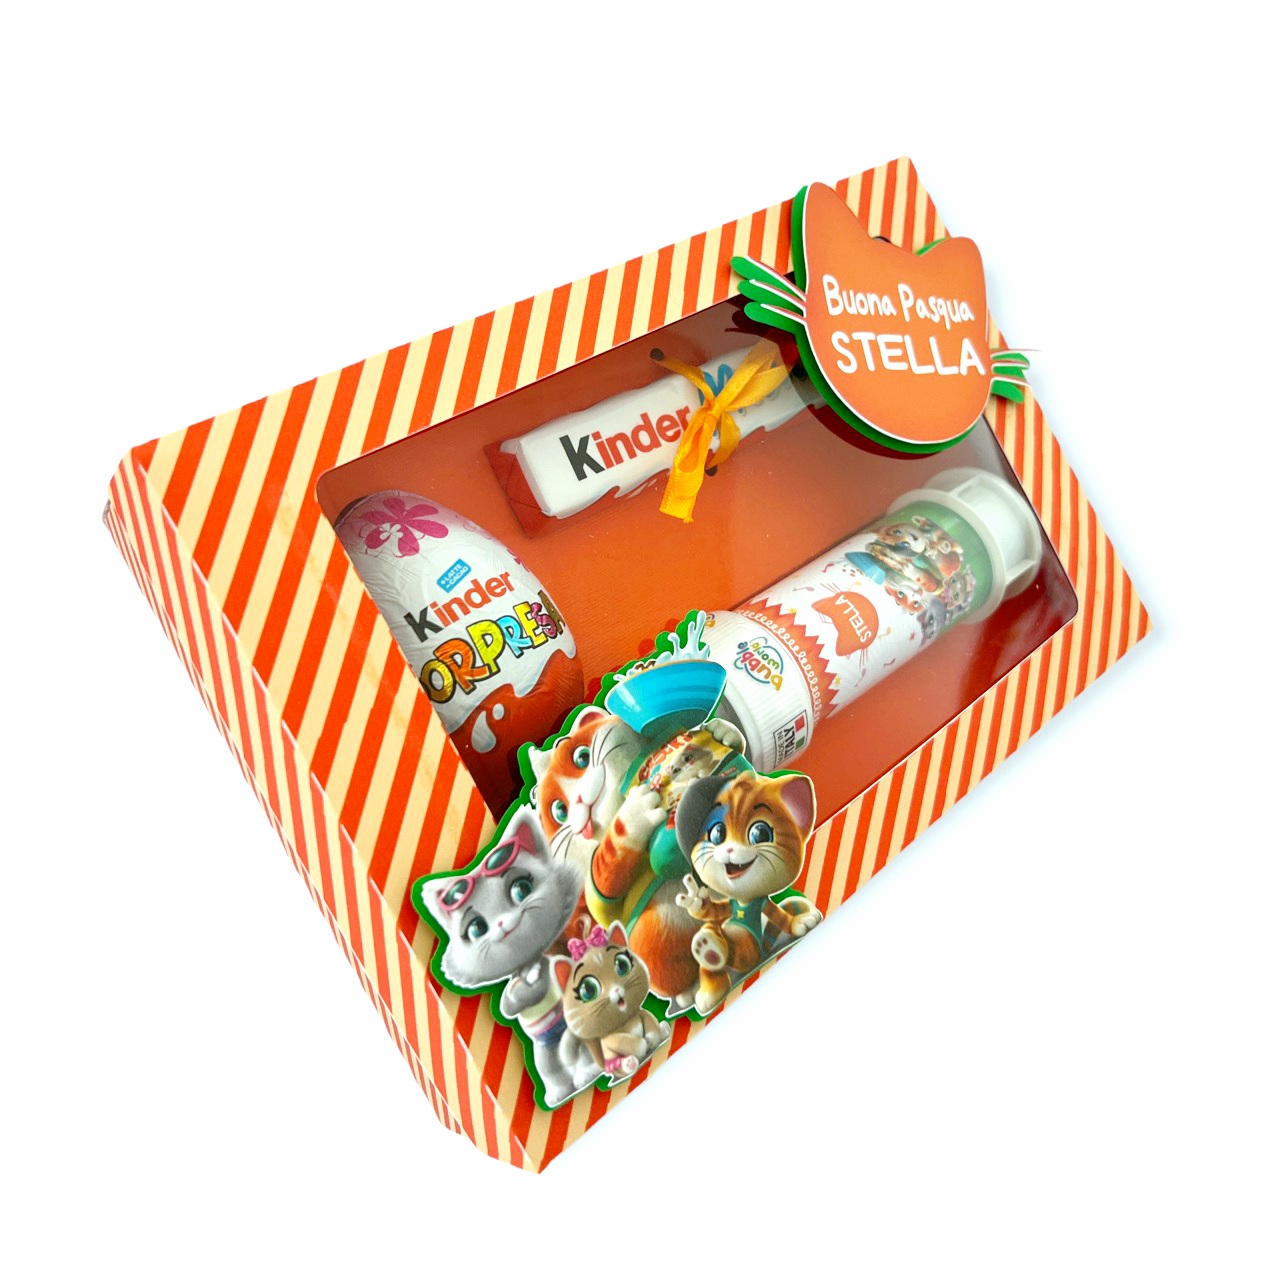 44 Gatti Gift Box » Torte di Caramelle di Laura